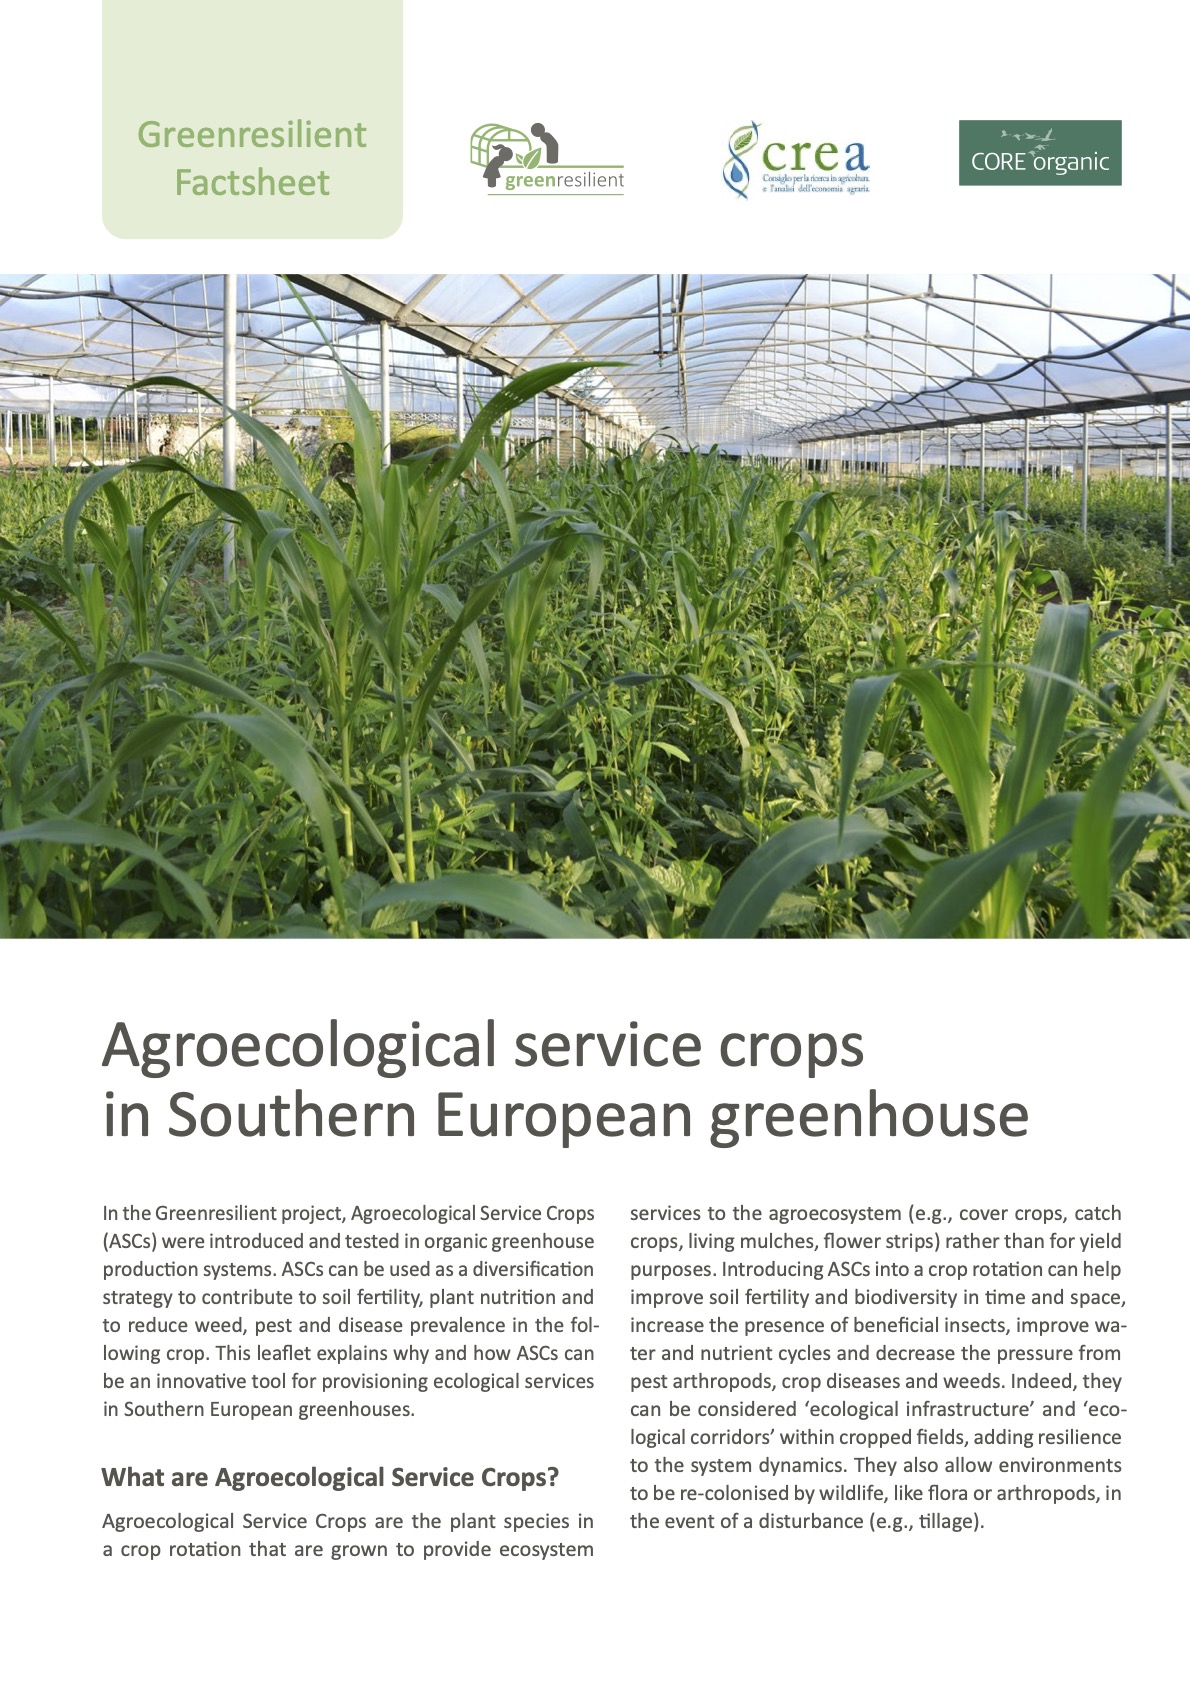 Agroökológiai szolgáltatások a dél-európai üvegházban (Greenresilient Factsheet)